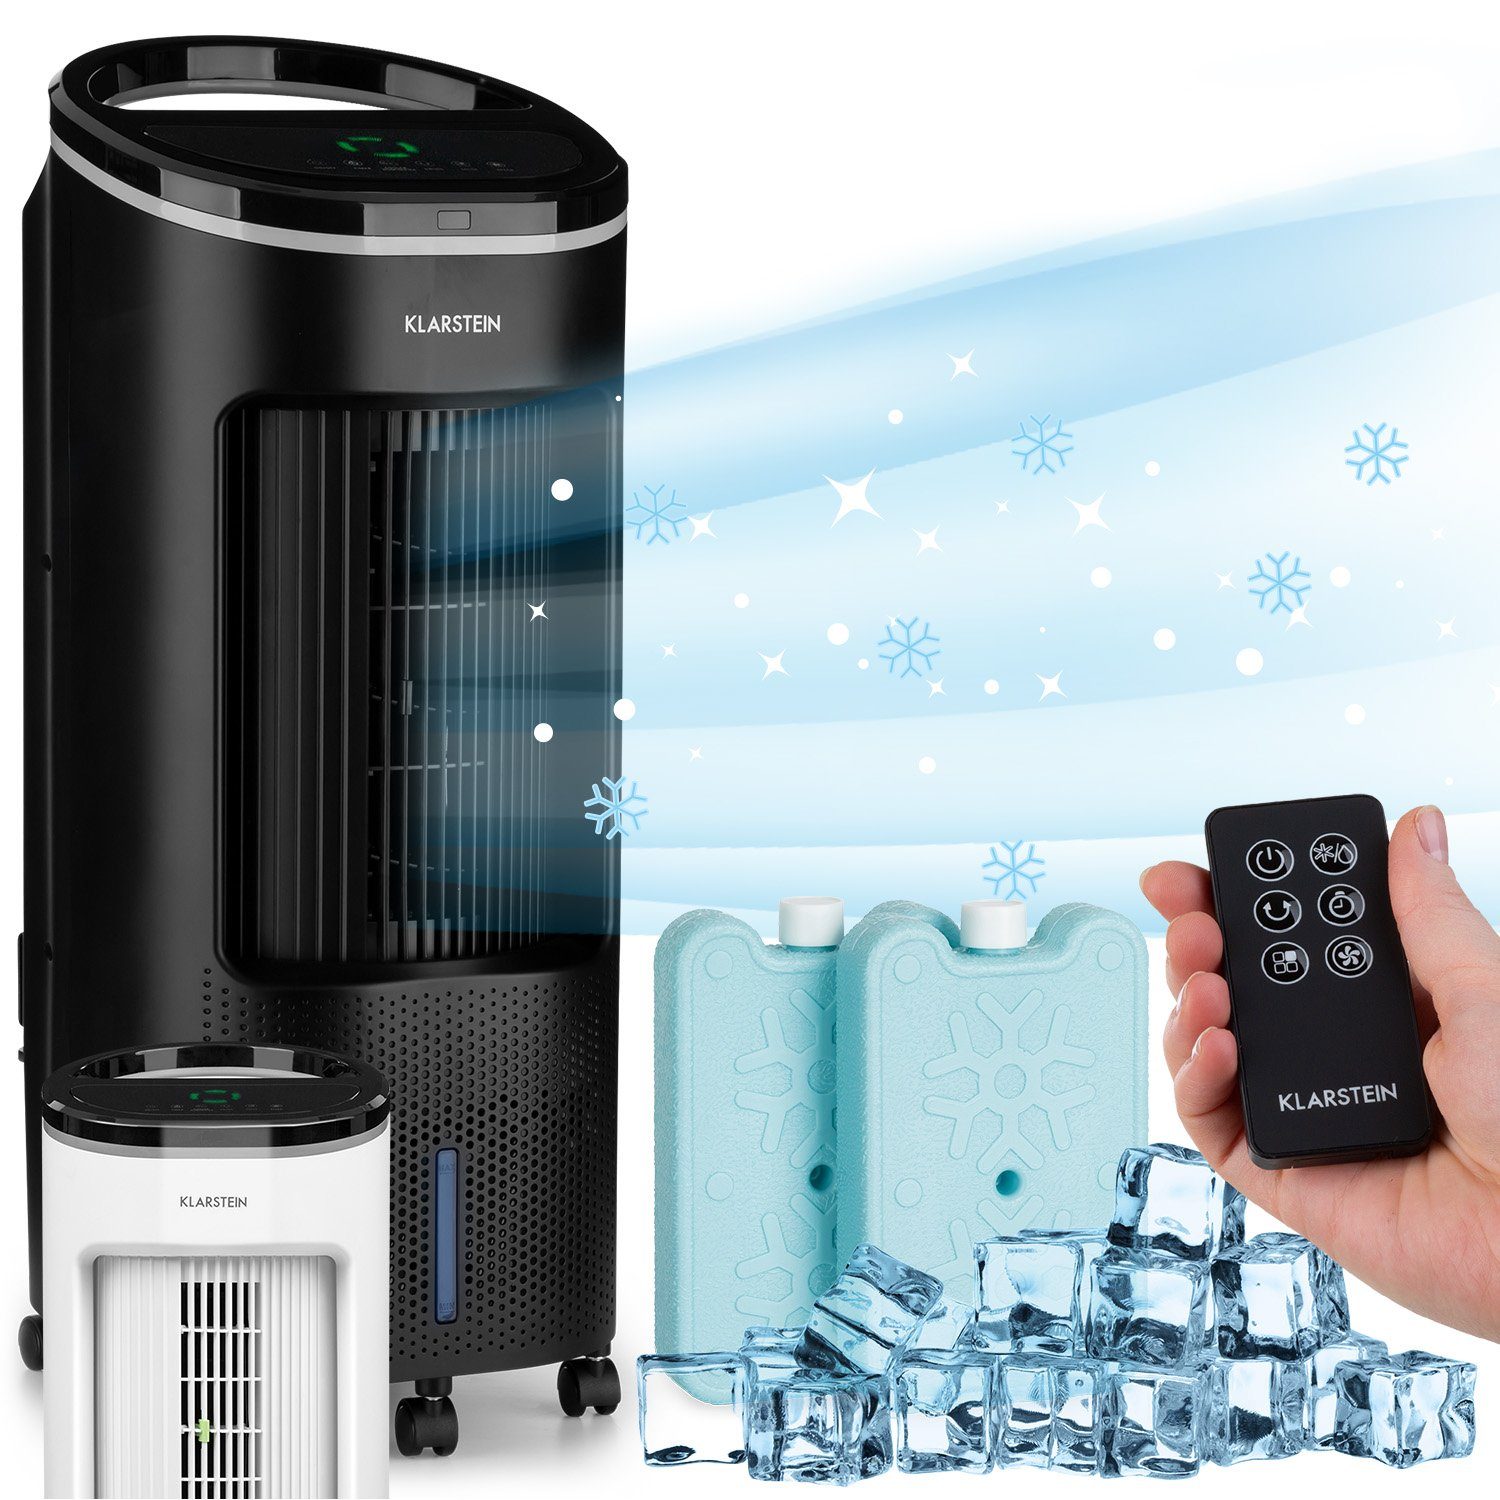 Klarstein Ventilatorkombigerät IceWind Plus 4-in-1 Luftkühler 330 m³/h  Oszillation Fernbedienung, Klimagerät mobile Klimaanlage mobil Air  Conditioner Air Cooler